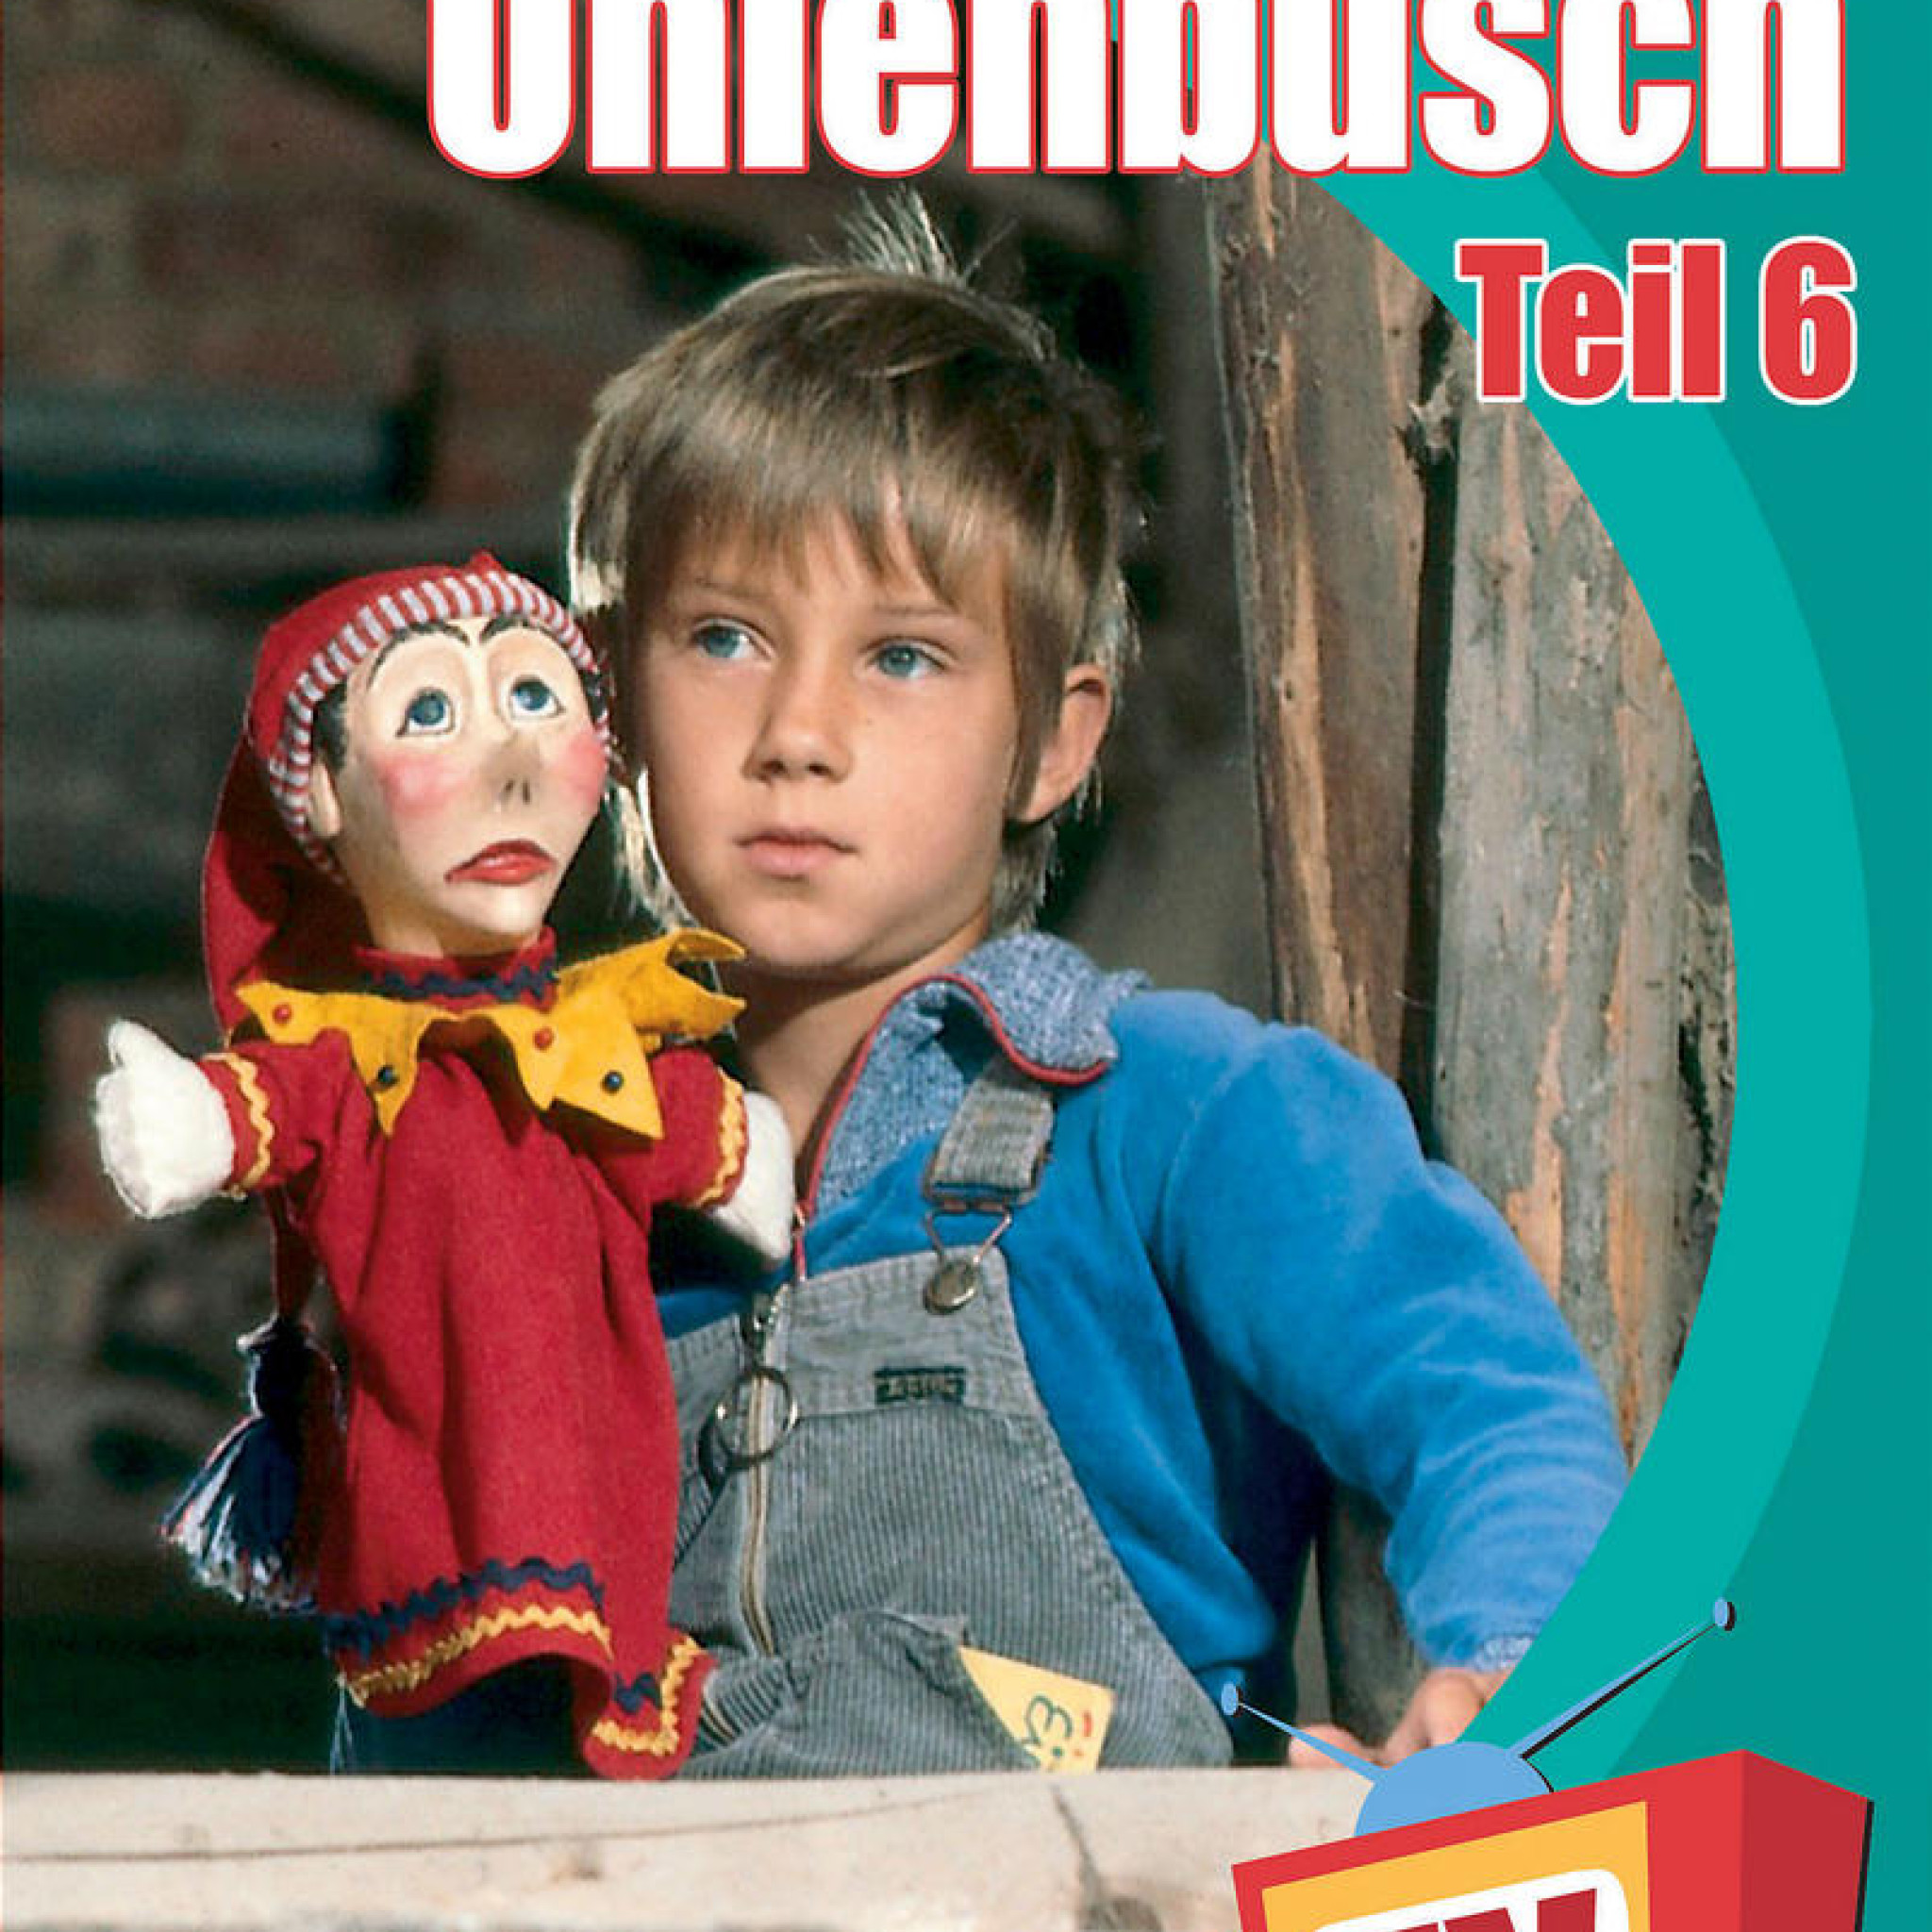 Neues aus Uhlenbusch (Vol. 6) 0602498186303